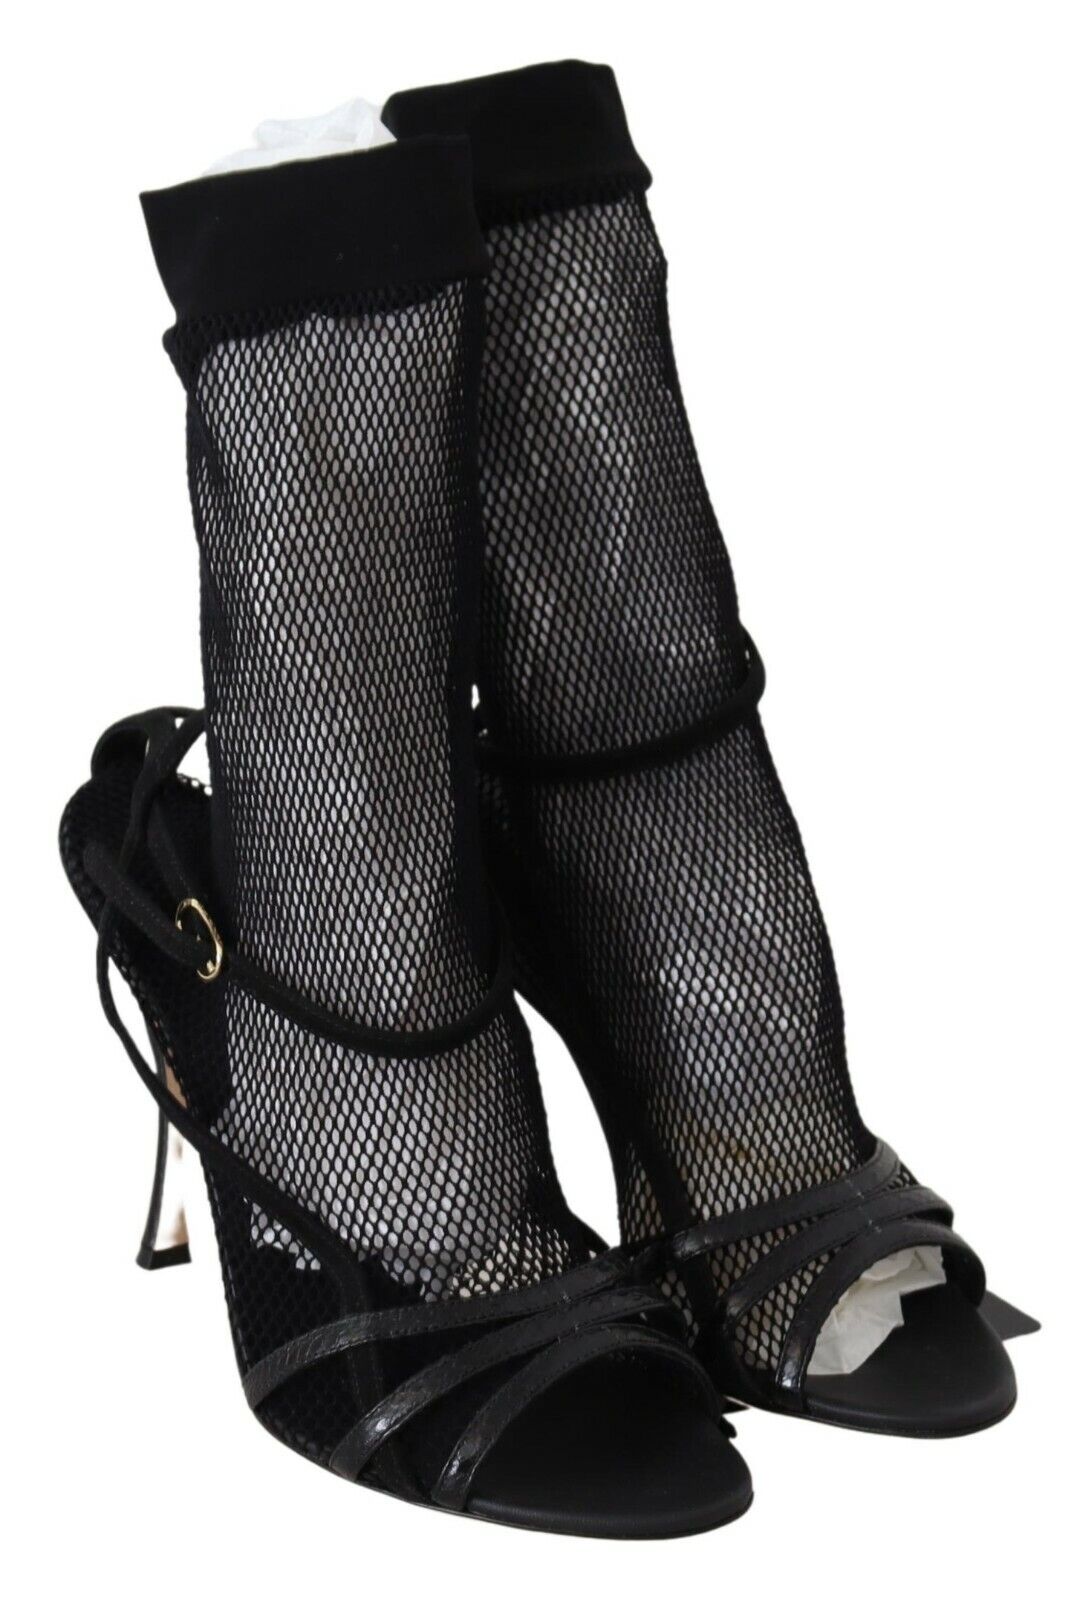 Dolce & Gabbana Black Suede Short Boots Sandals Shoes - DEA STILOSA MILANO